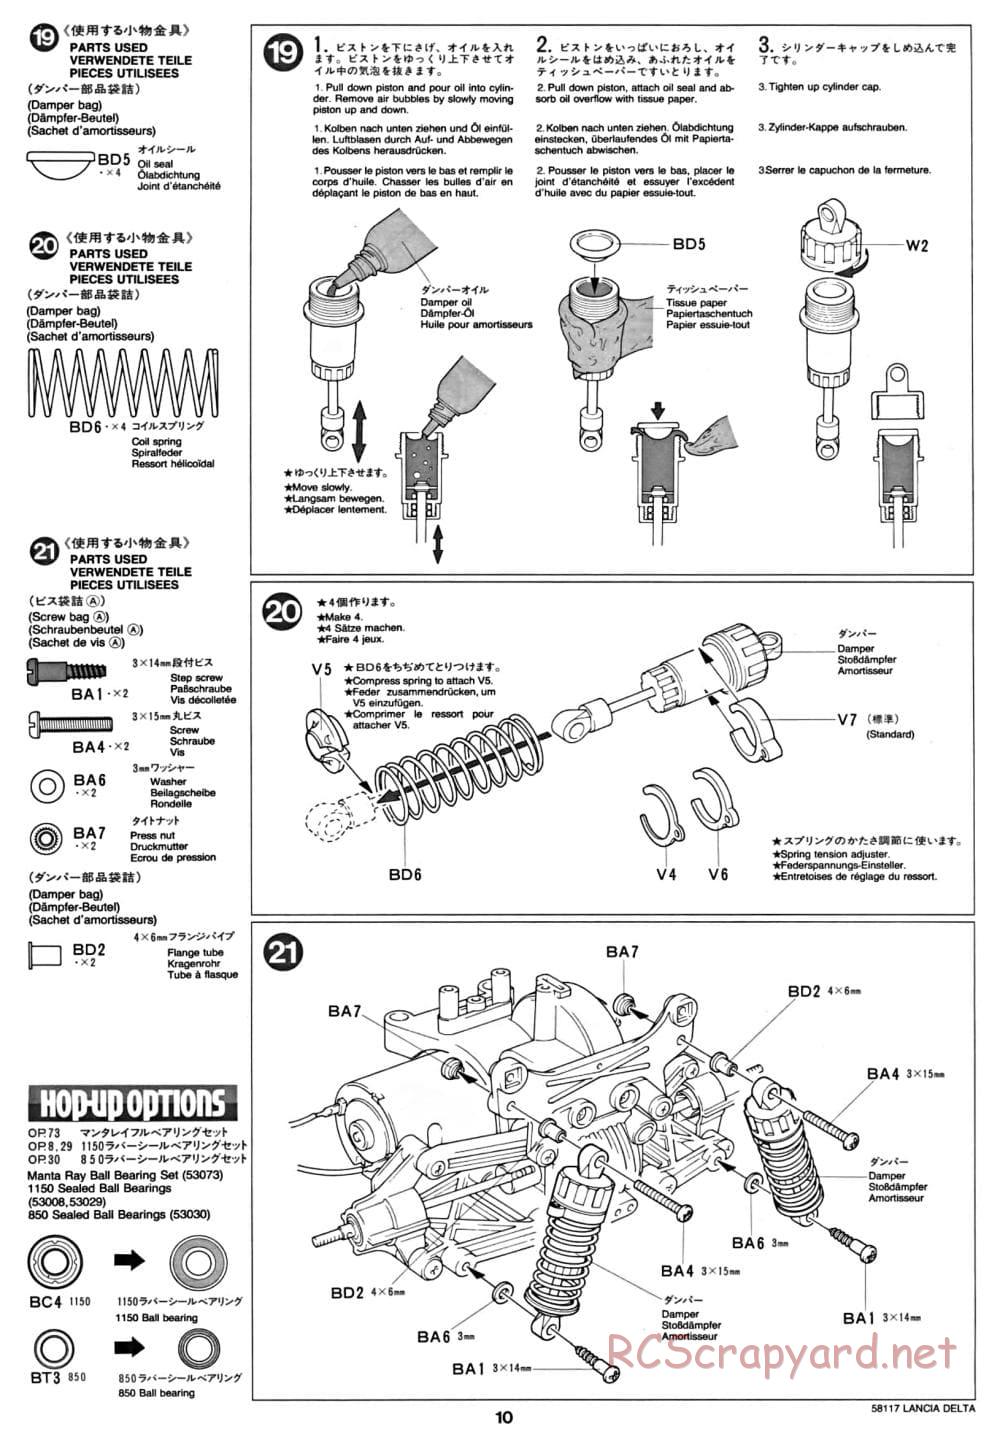 Tamiya - Lancia Delta HF Integrale - TA-01 Chassis - Manual - Page 10